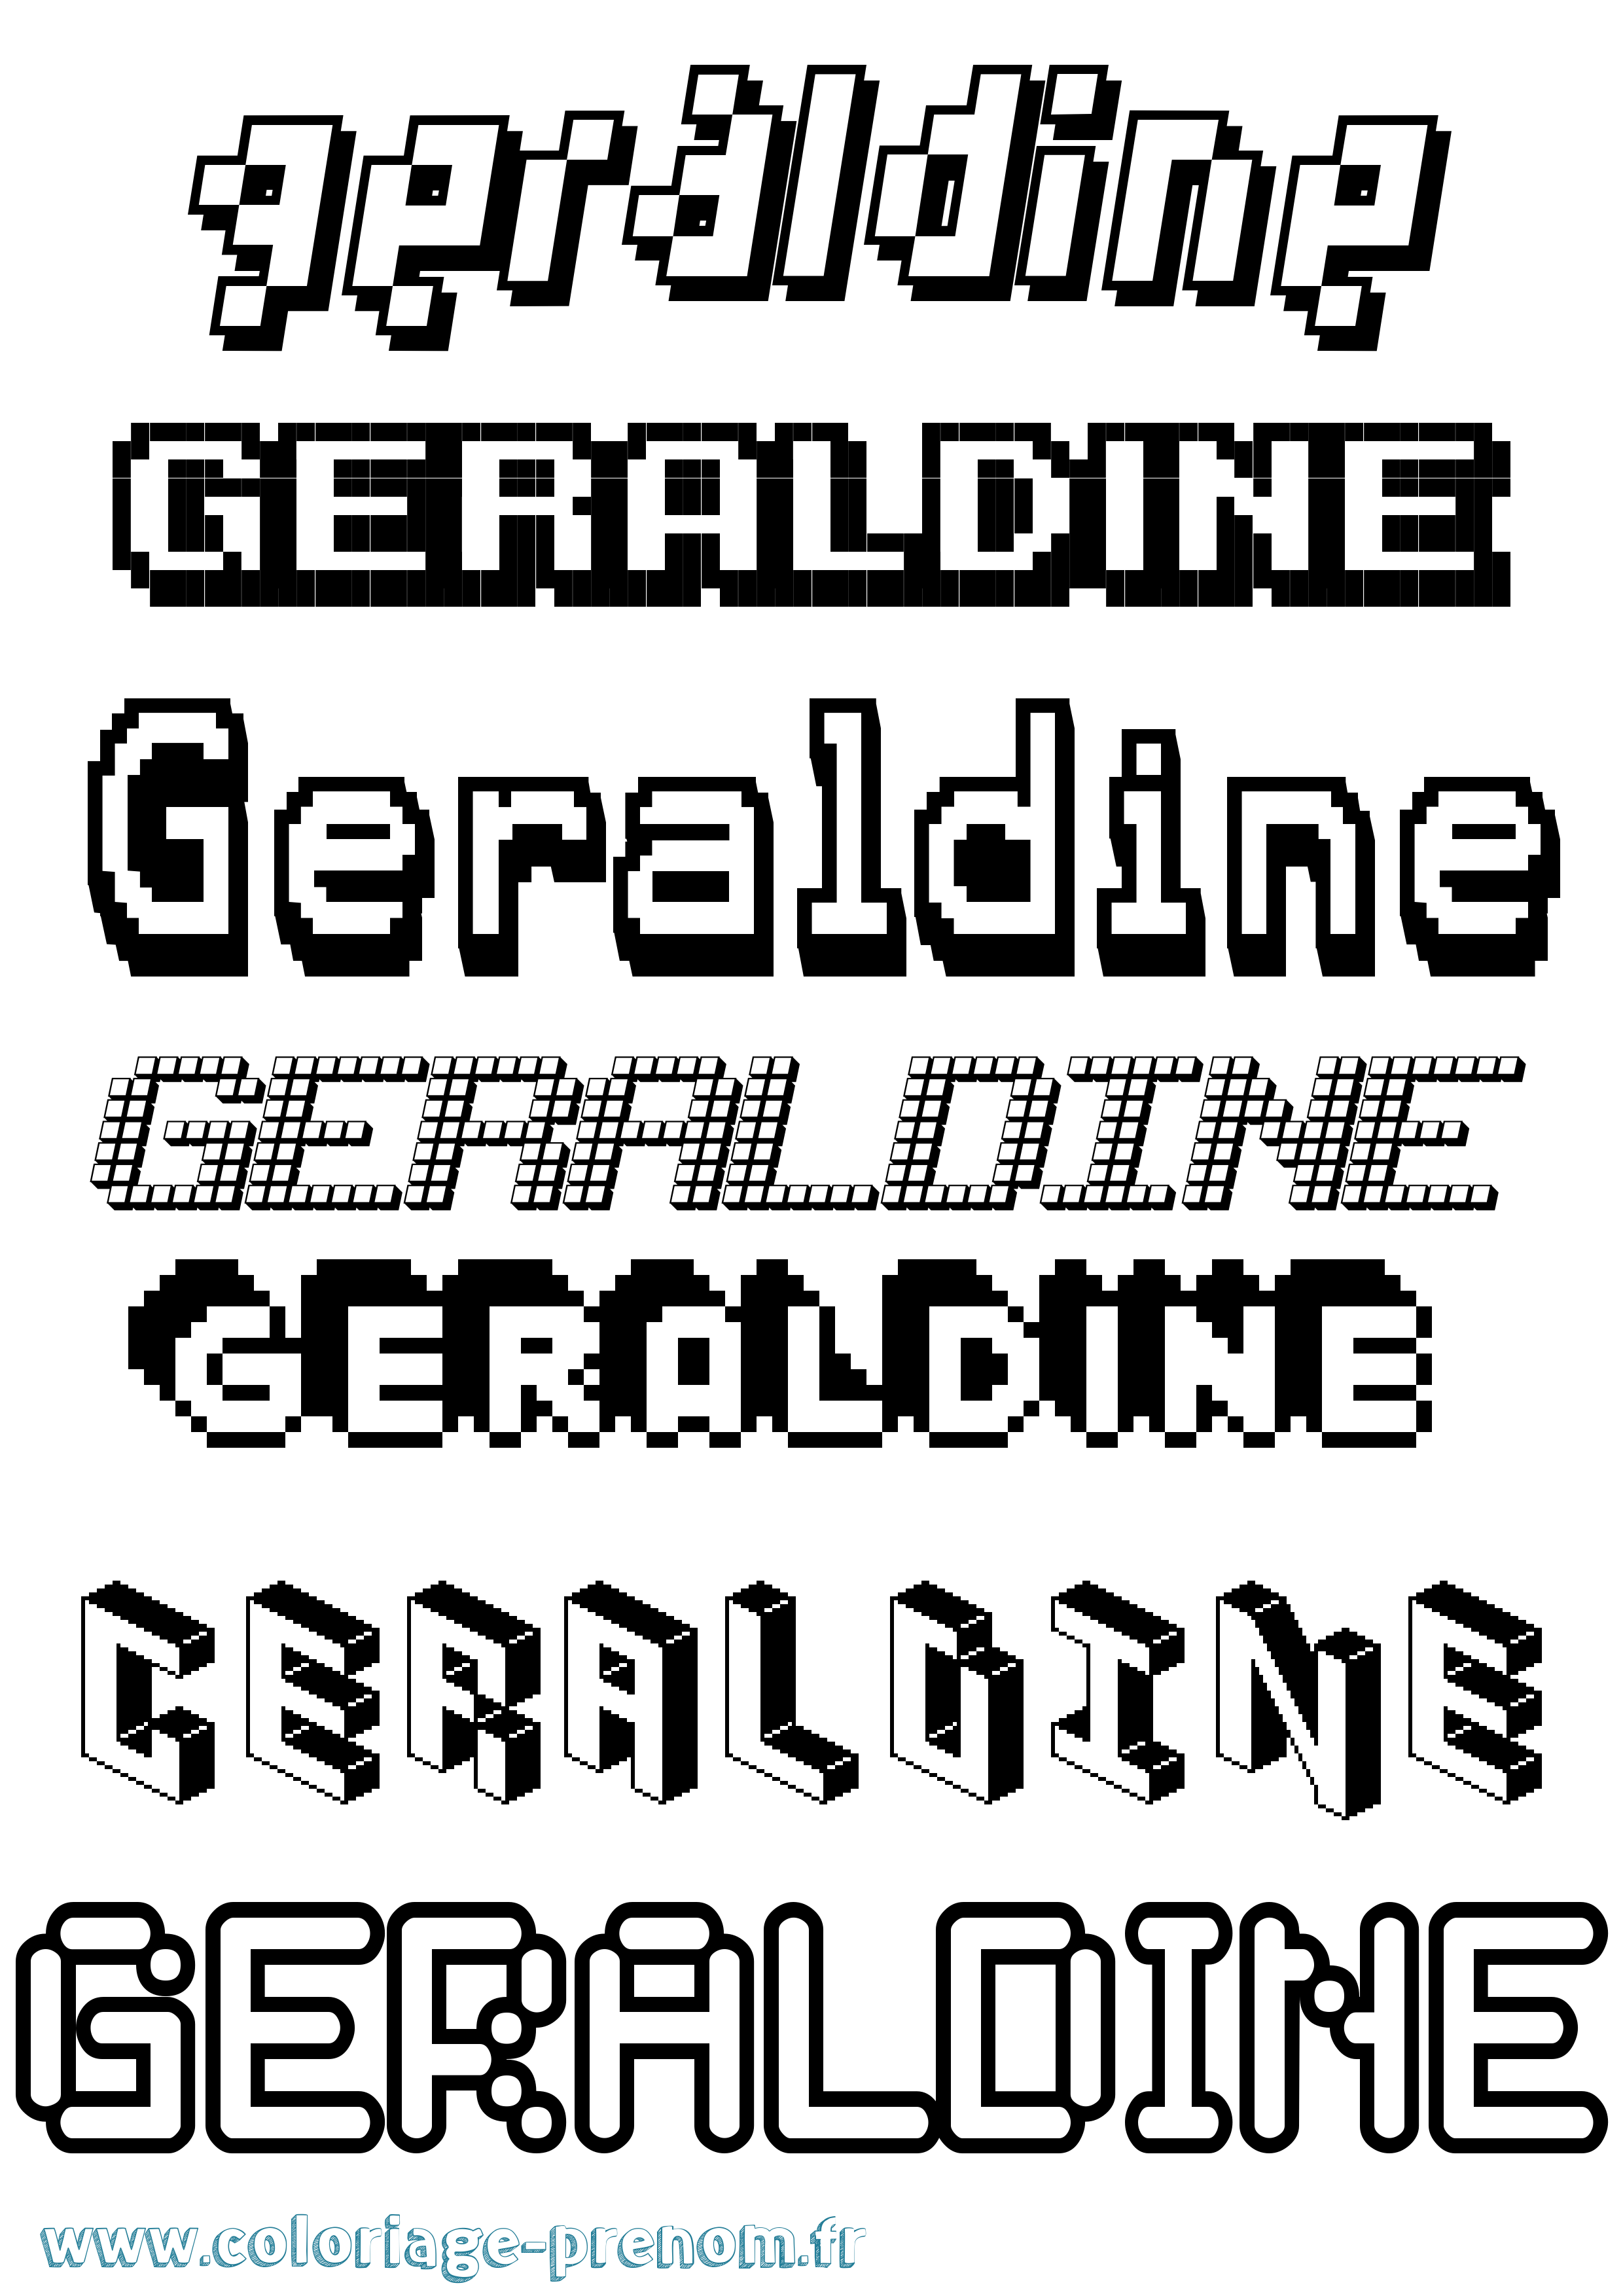 Coloriage prénom Geraldine Pixel